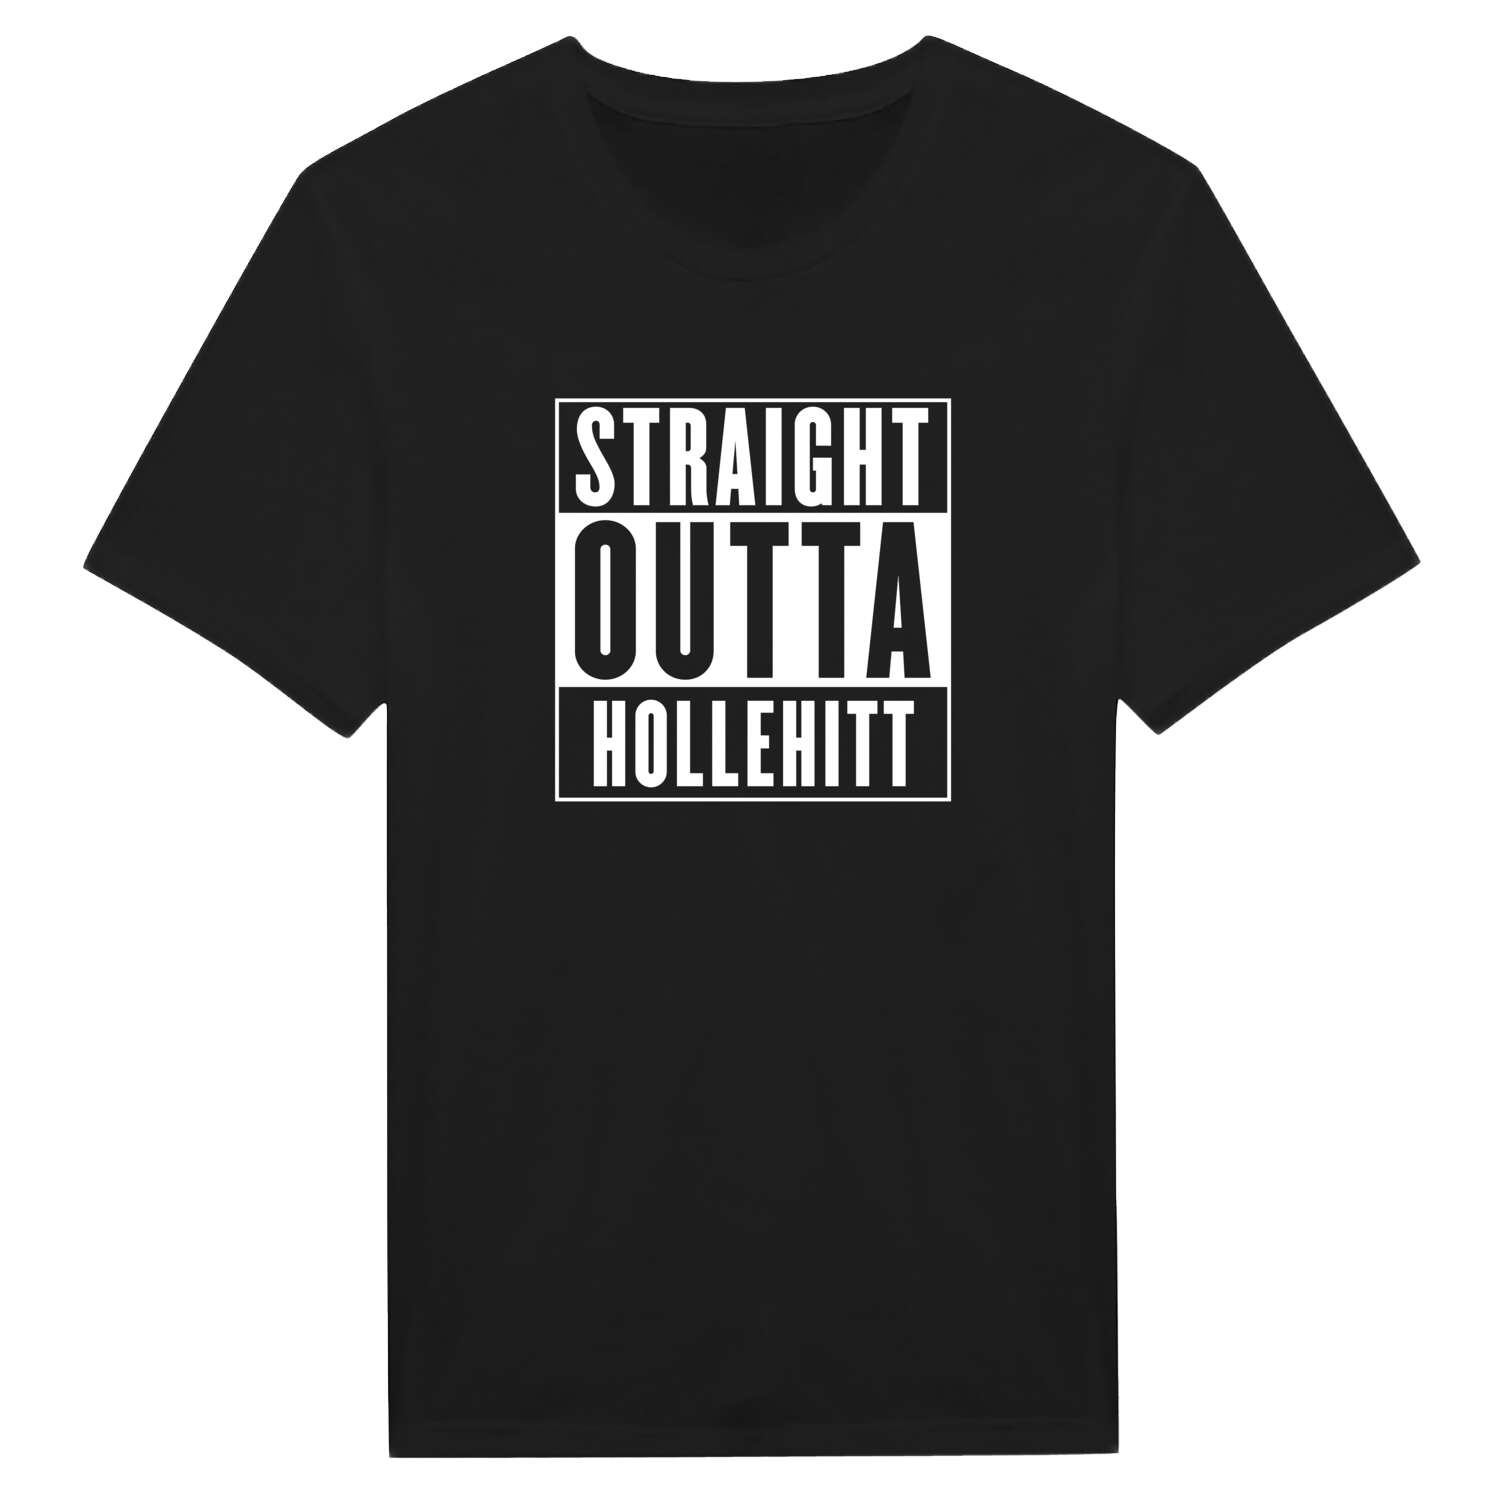 Hollehitt T-Shirt »Straight Outta«